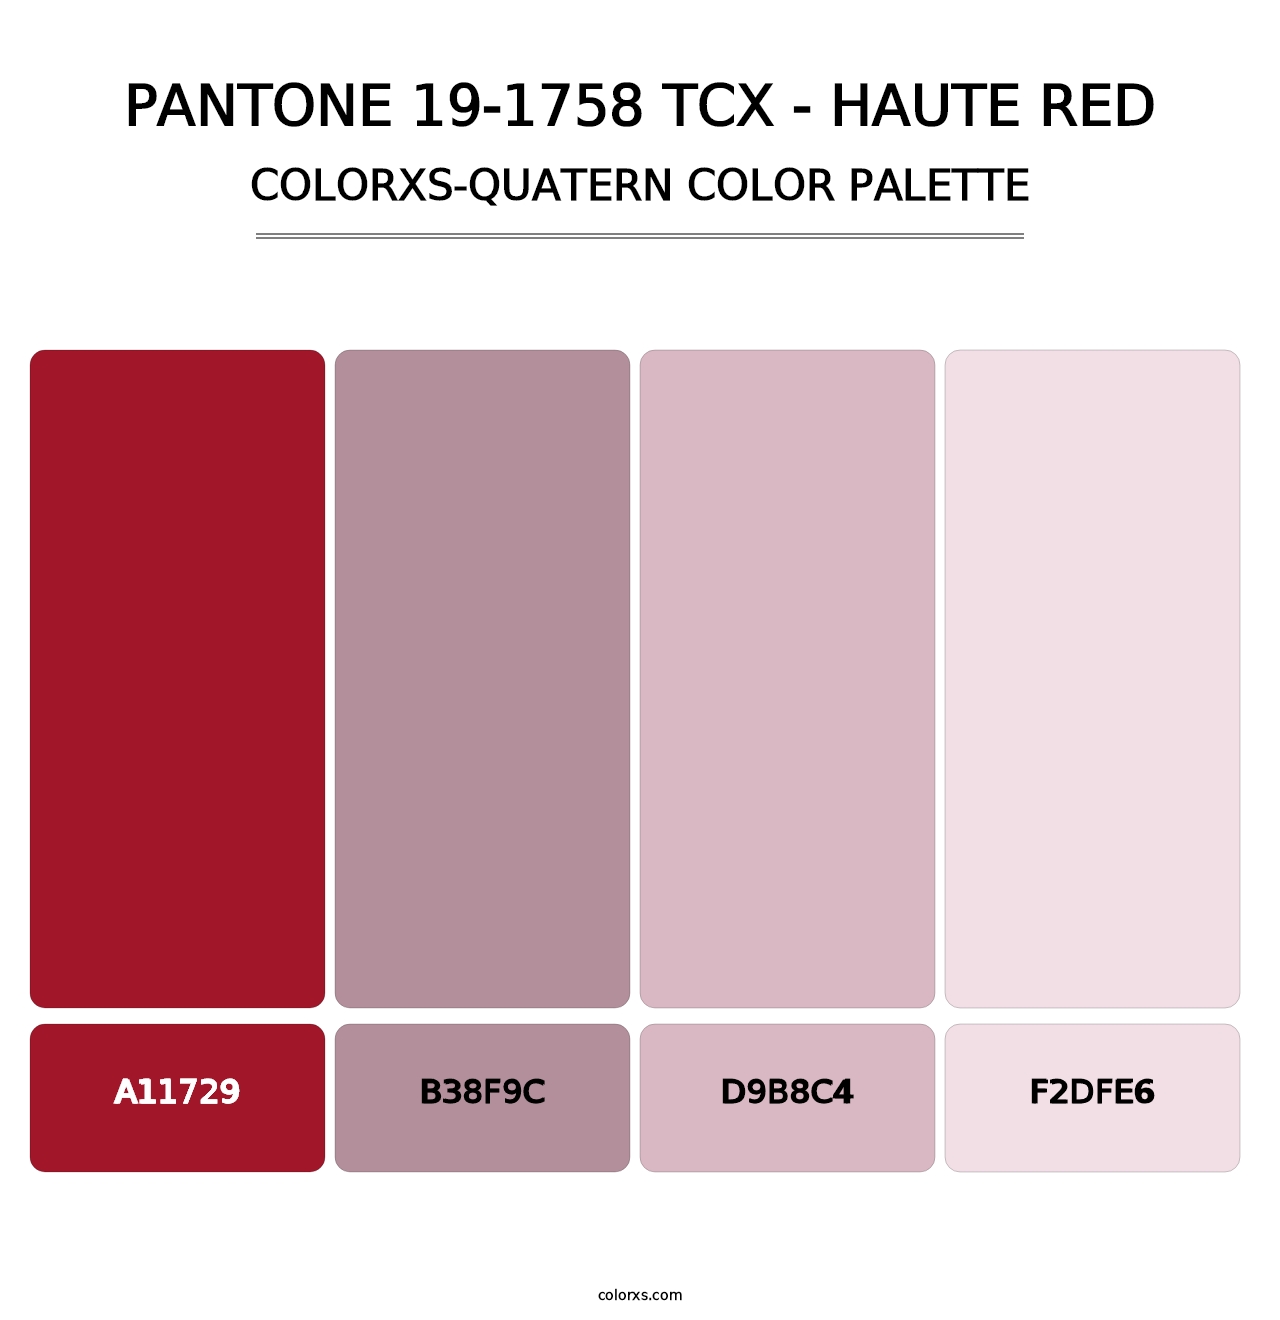 PANTONE 19-1758 TCX - Haute Red - Colorxs Quatern Palette